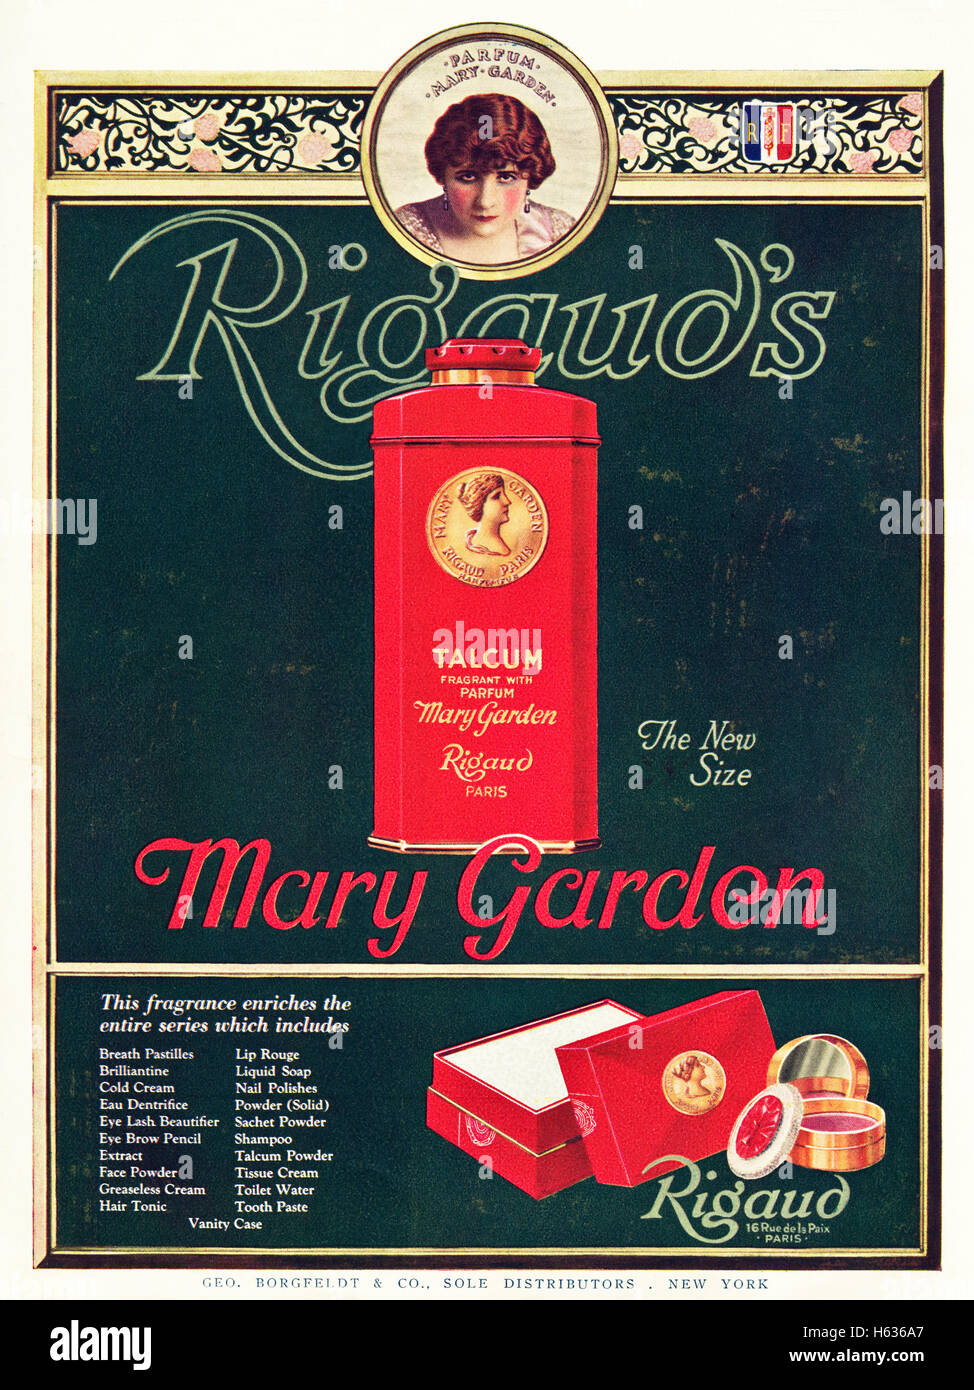 1920s annuncio pubblicitario dal vecchio originale vintage rivista americana datata 1921 pubblicità Maria Giardino Rigaud Il duomo di cosmetici Foto Stock